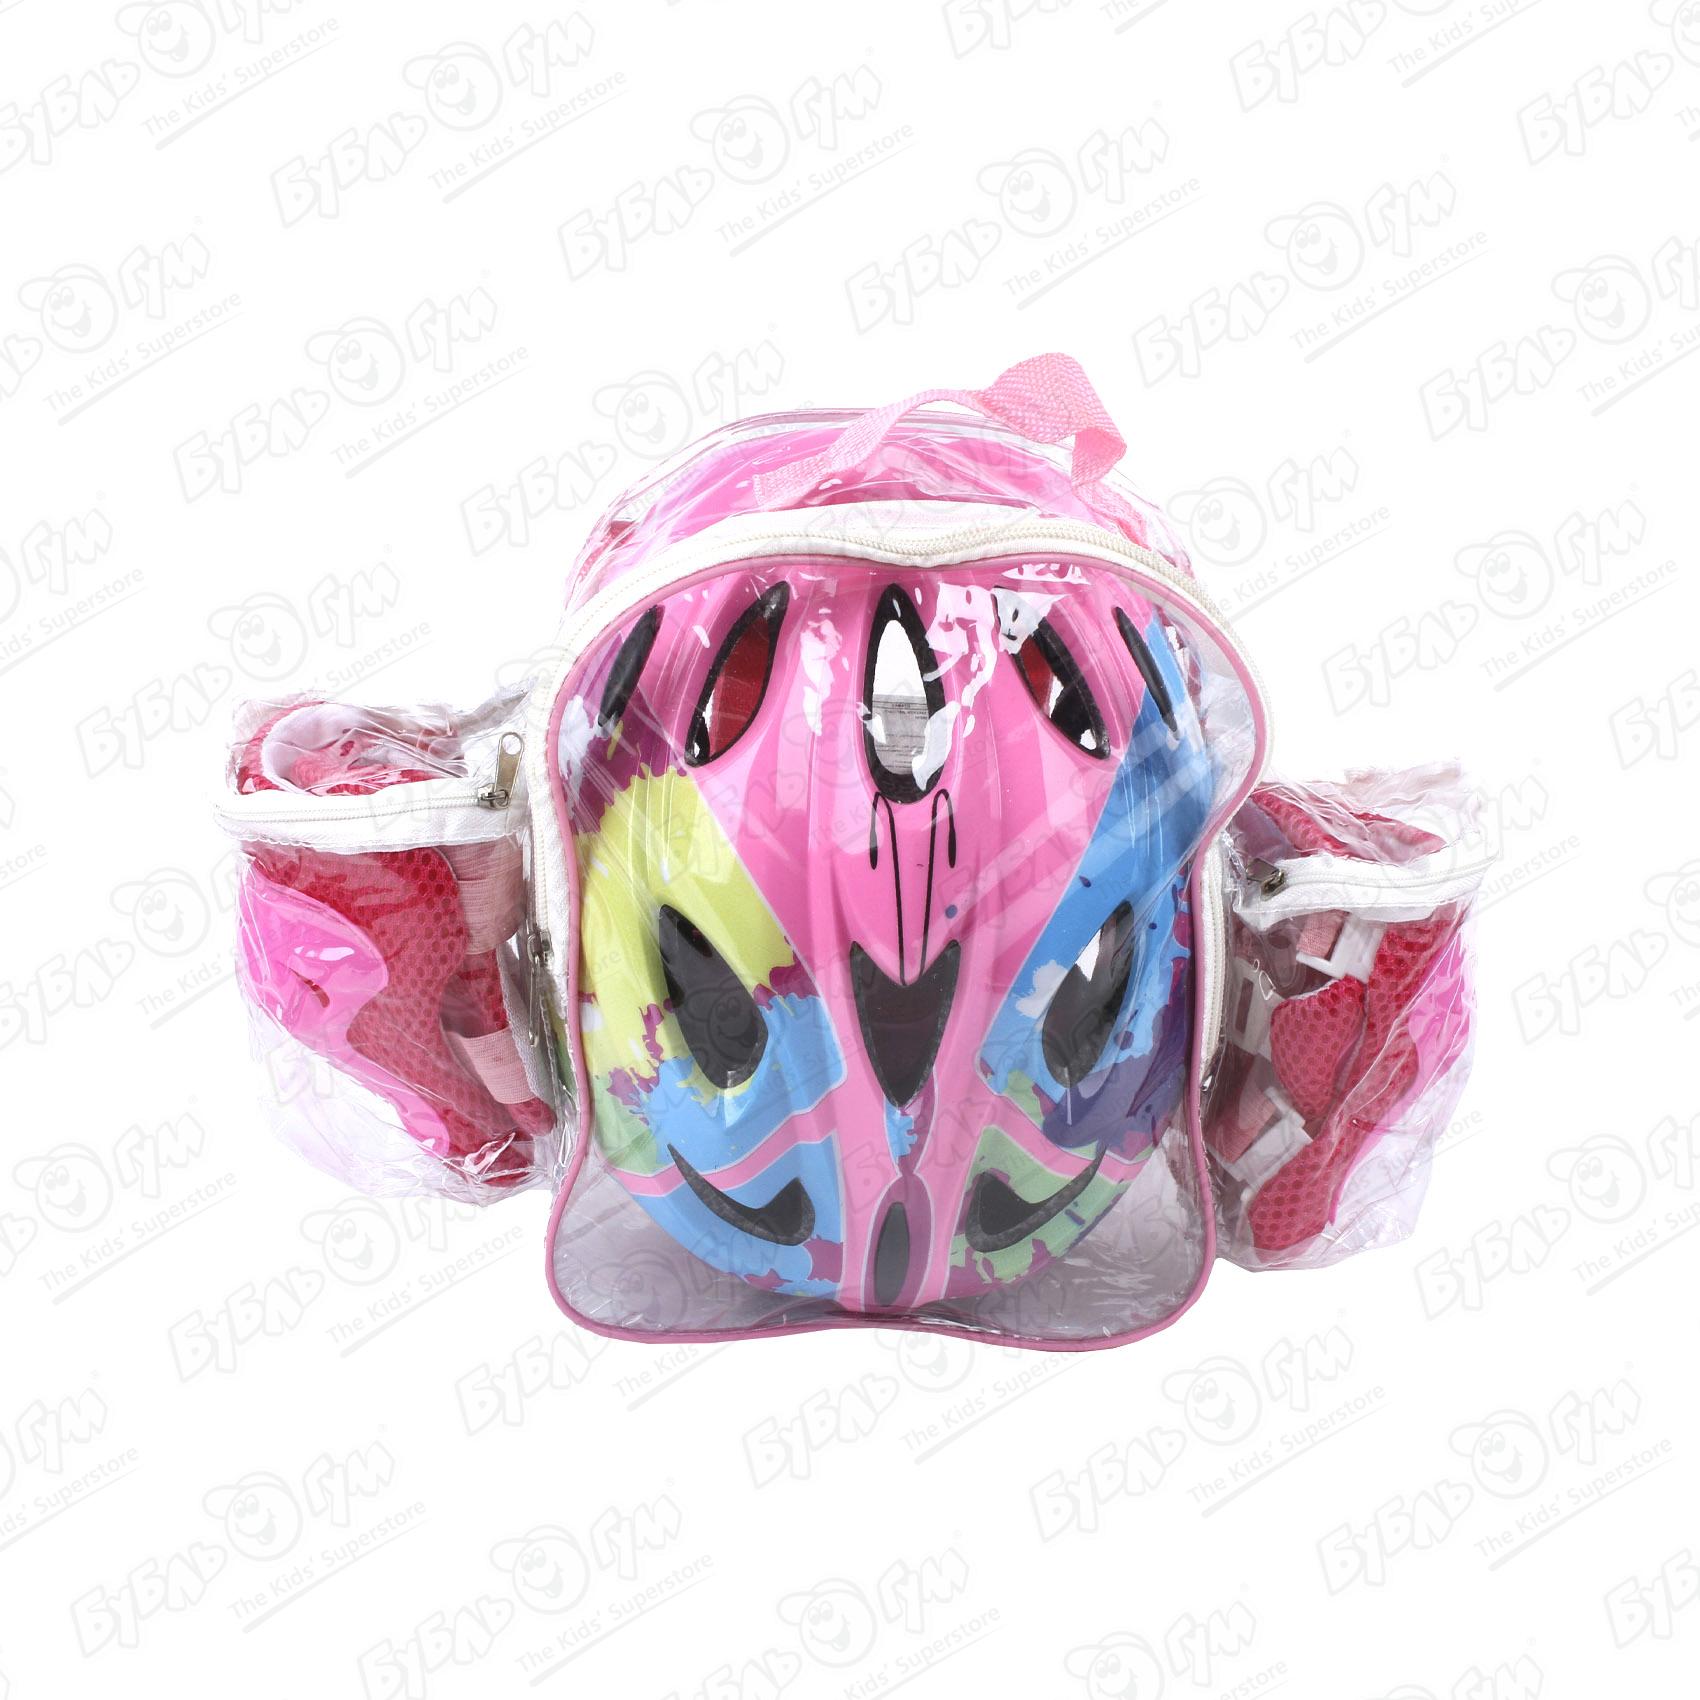 Комплект защиты ROLLO PRO наколенники защита для рук и шлем в рюкзаке розовый 51-54см, размер M